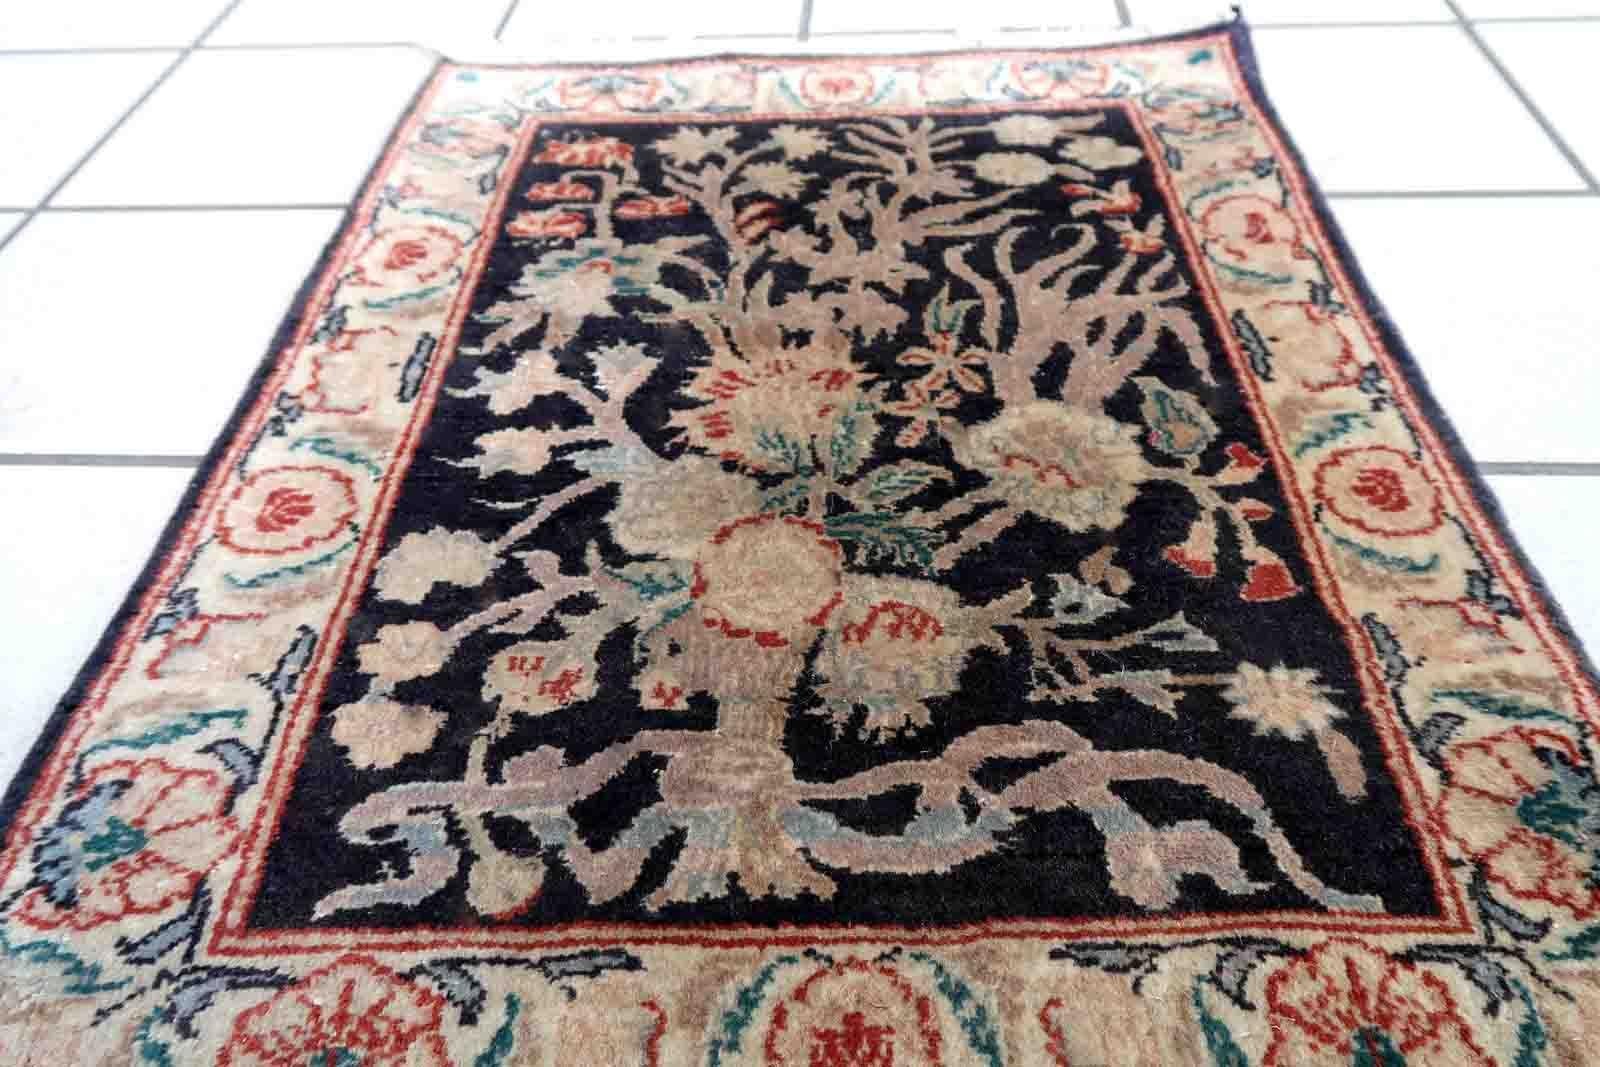 Handgefertigter Vintage-Tabriz-Teppich in schwarzer Farbe und Gartendesign. Der Teppich stammt aus dem Ende des 20. Jahrhunderts und ist in gutem Originalzustand.

-Zustand: original gut,

-Umgebung: 1970er Jahre,

-Größe: 1,5' x 2' (48cm x